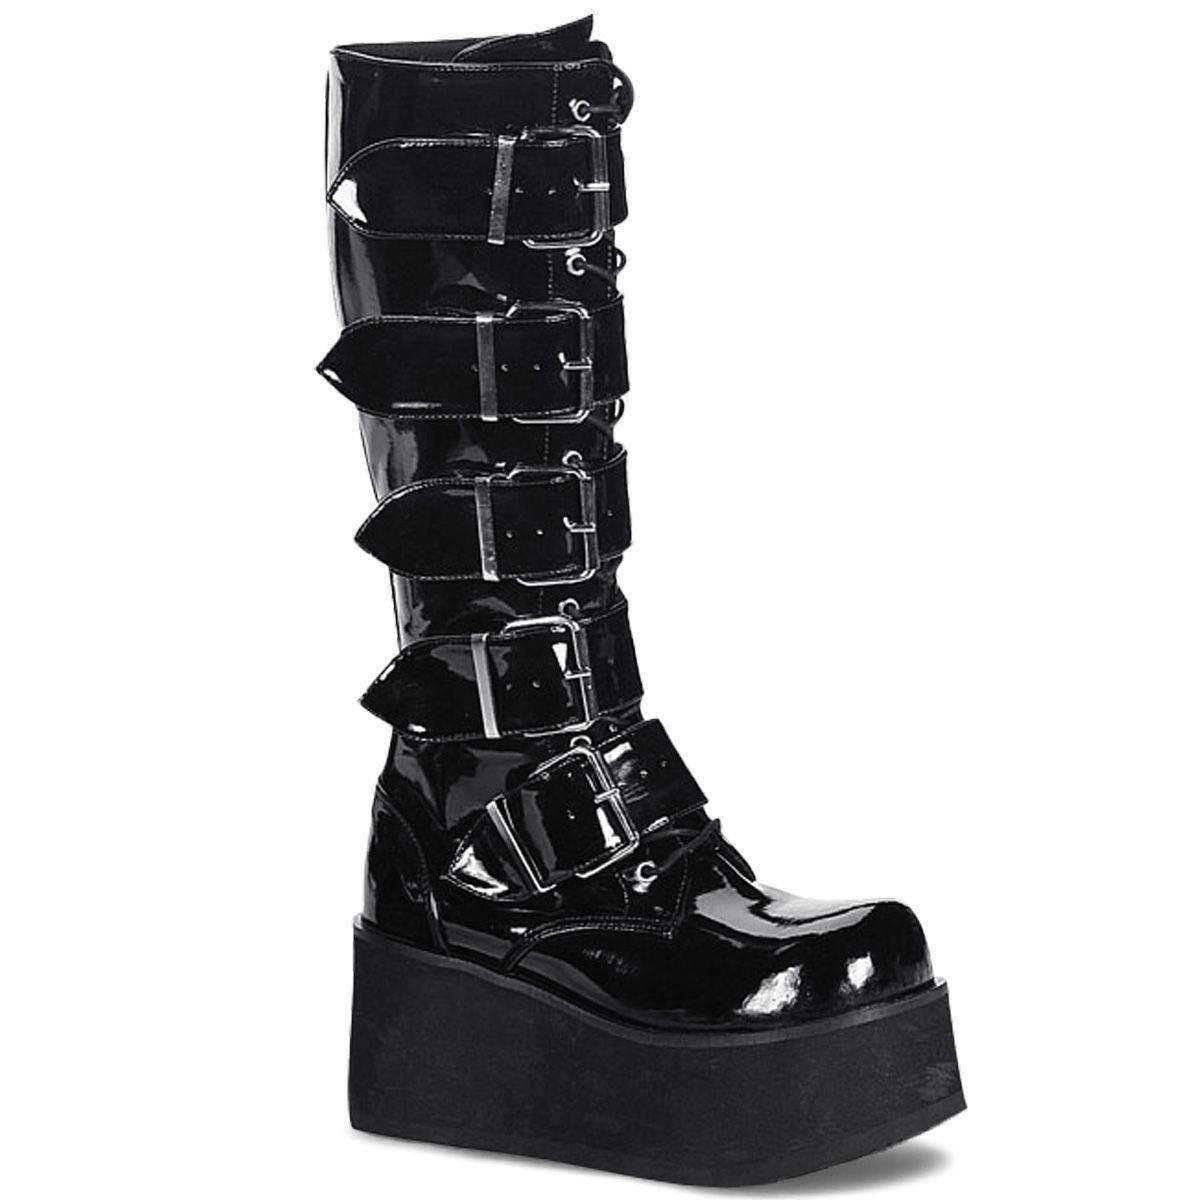 Ботинки до середины икры из лакированной кожи Demonia Trashville 518, черный черные женские ботинки на танкетке skechers